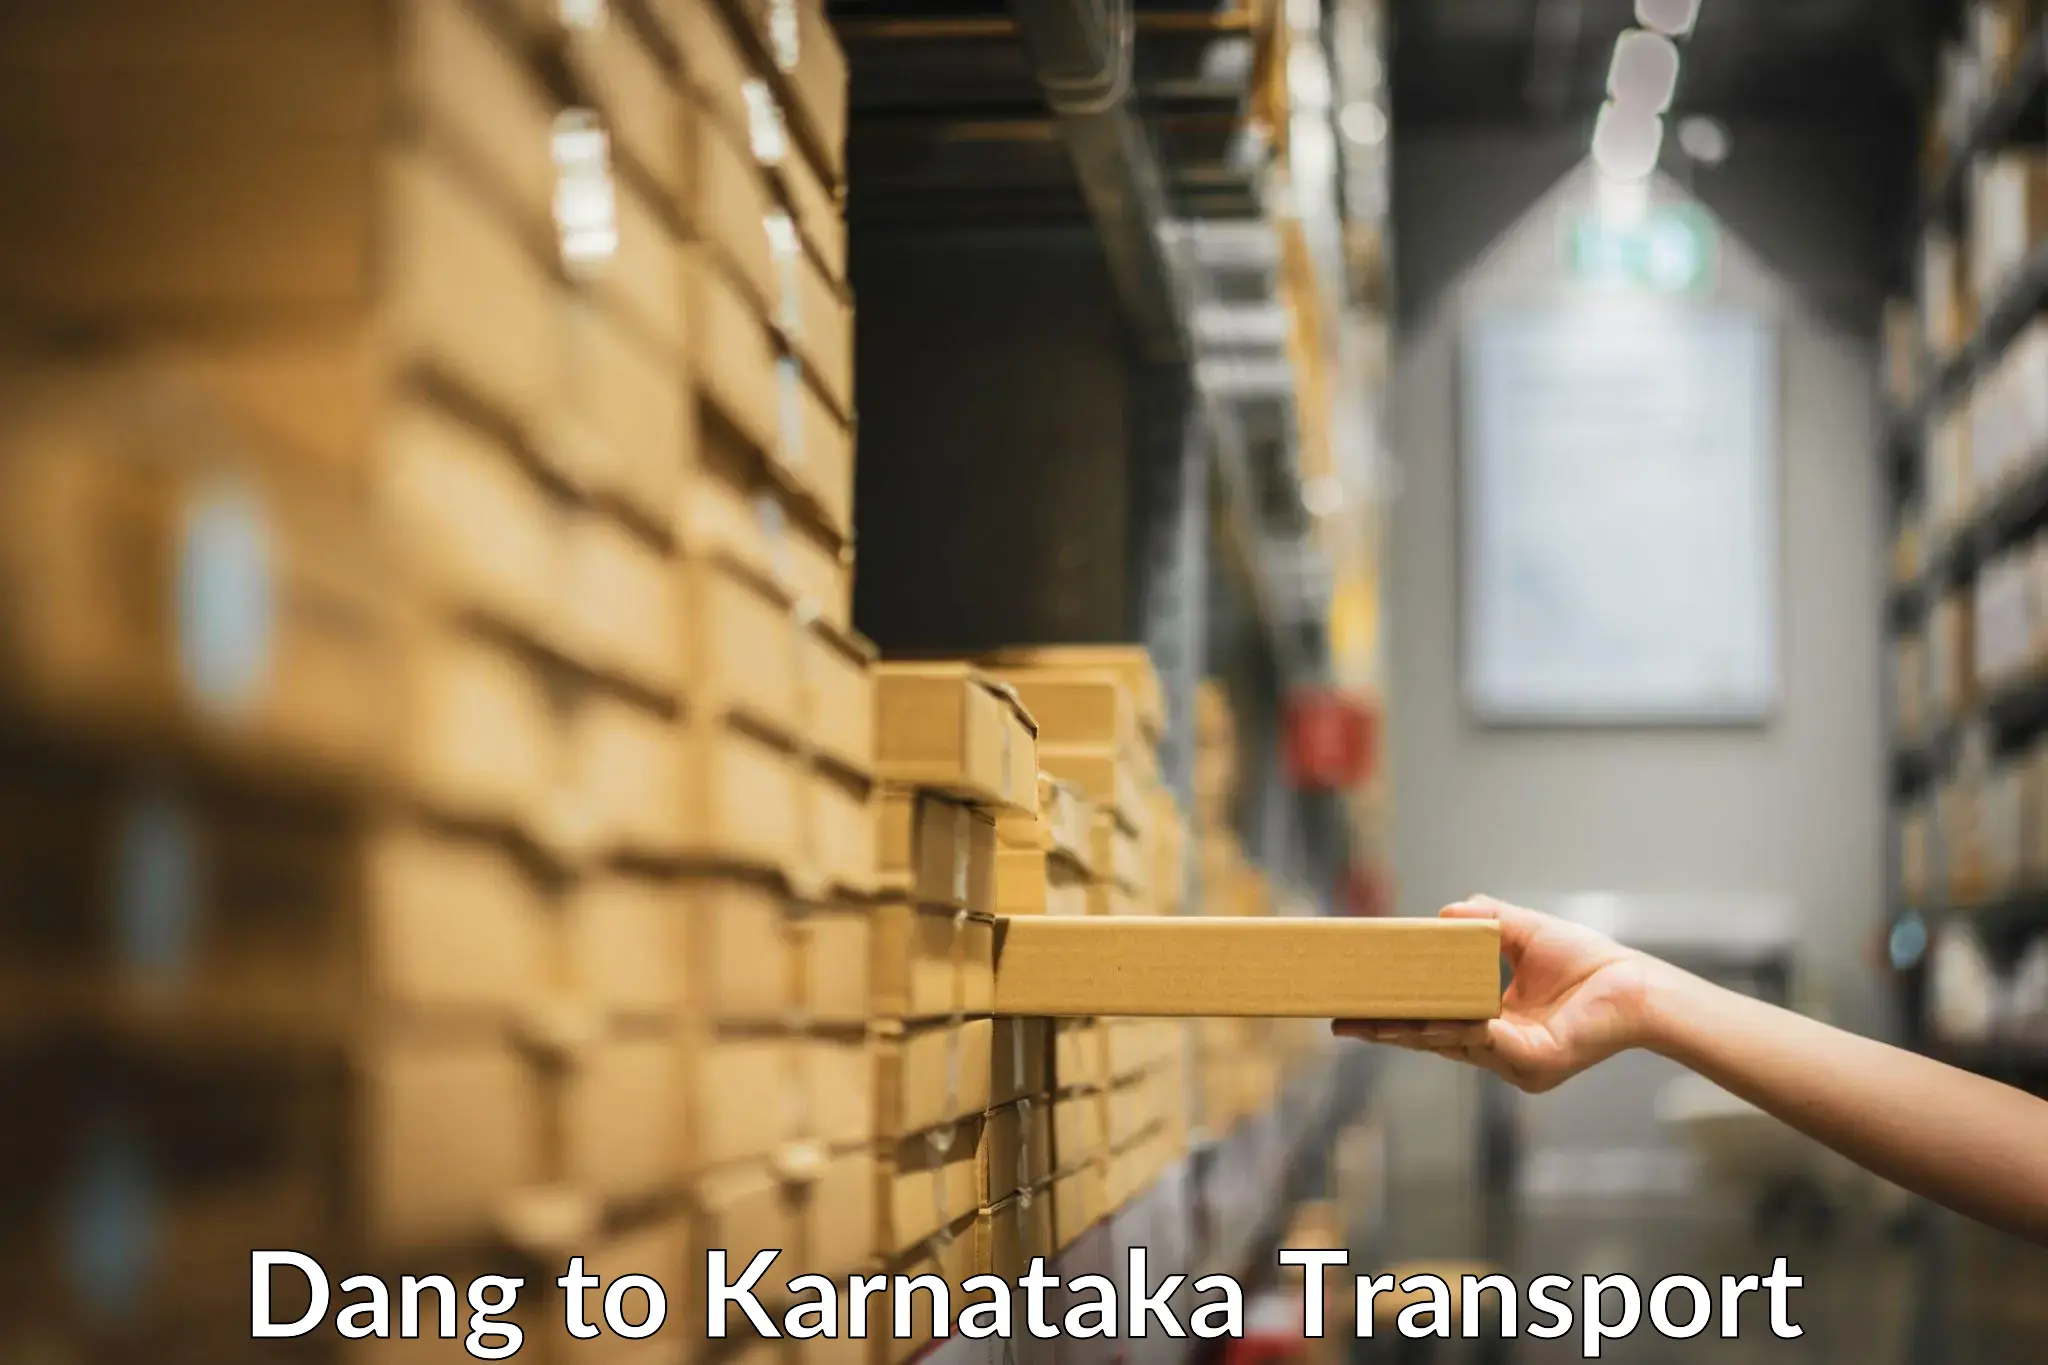 Furniture transport service Dang to Karnataka